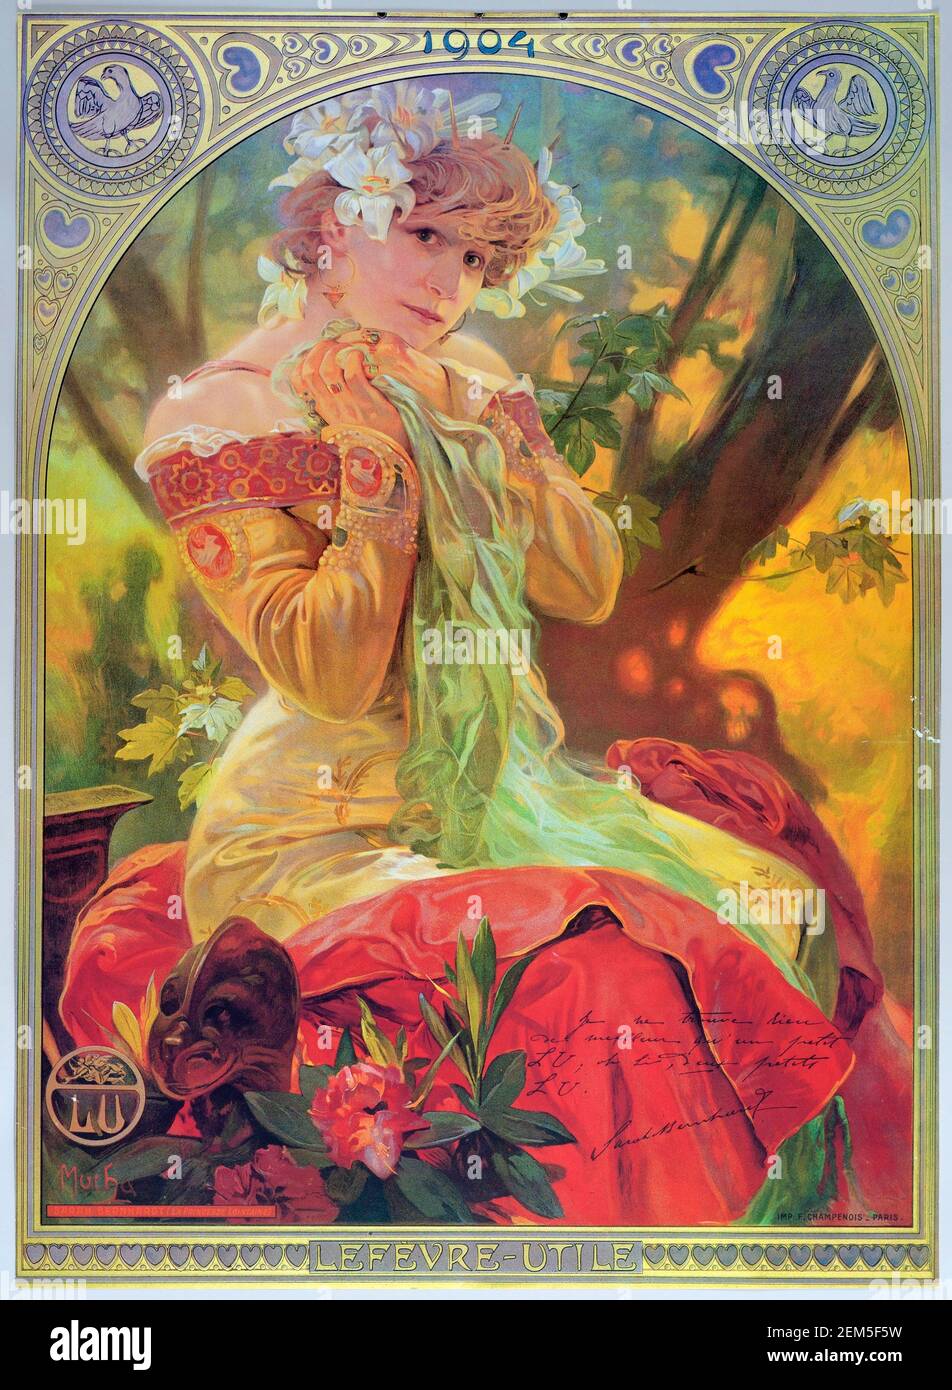 Alphonse Mucha, cartel publicitario de la Princesa Lointaine con Sarah Bernhardt, litografía en color, 1904. Alfons Maria Mucha (1860 -1939) fue una pintora, ilustradora y artista gráfico de estilo Art Nouveau checo, Foto de stock